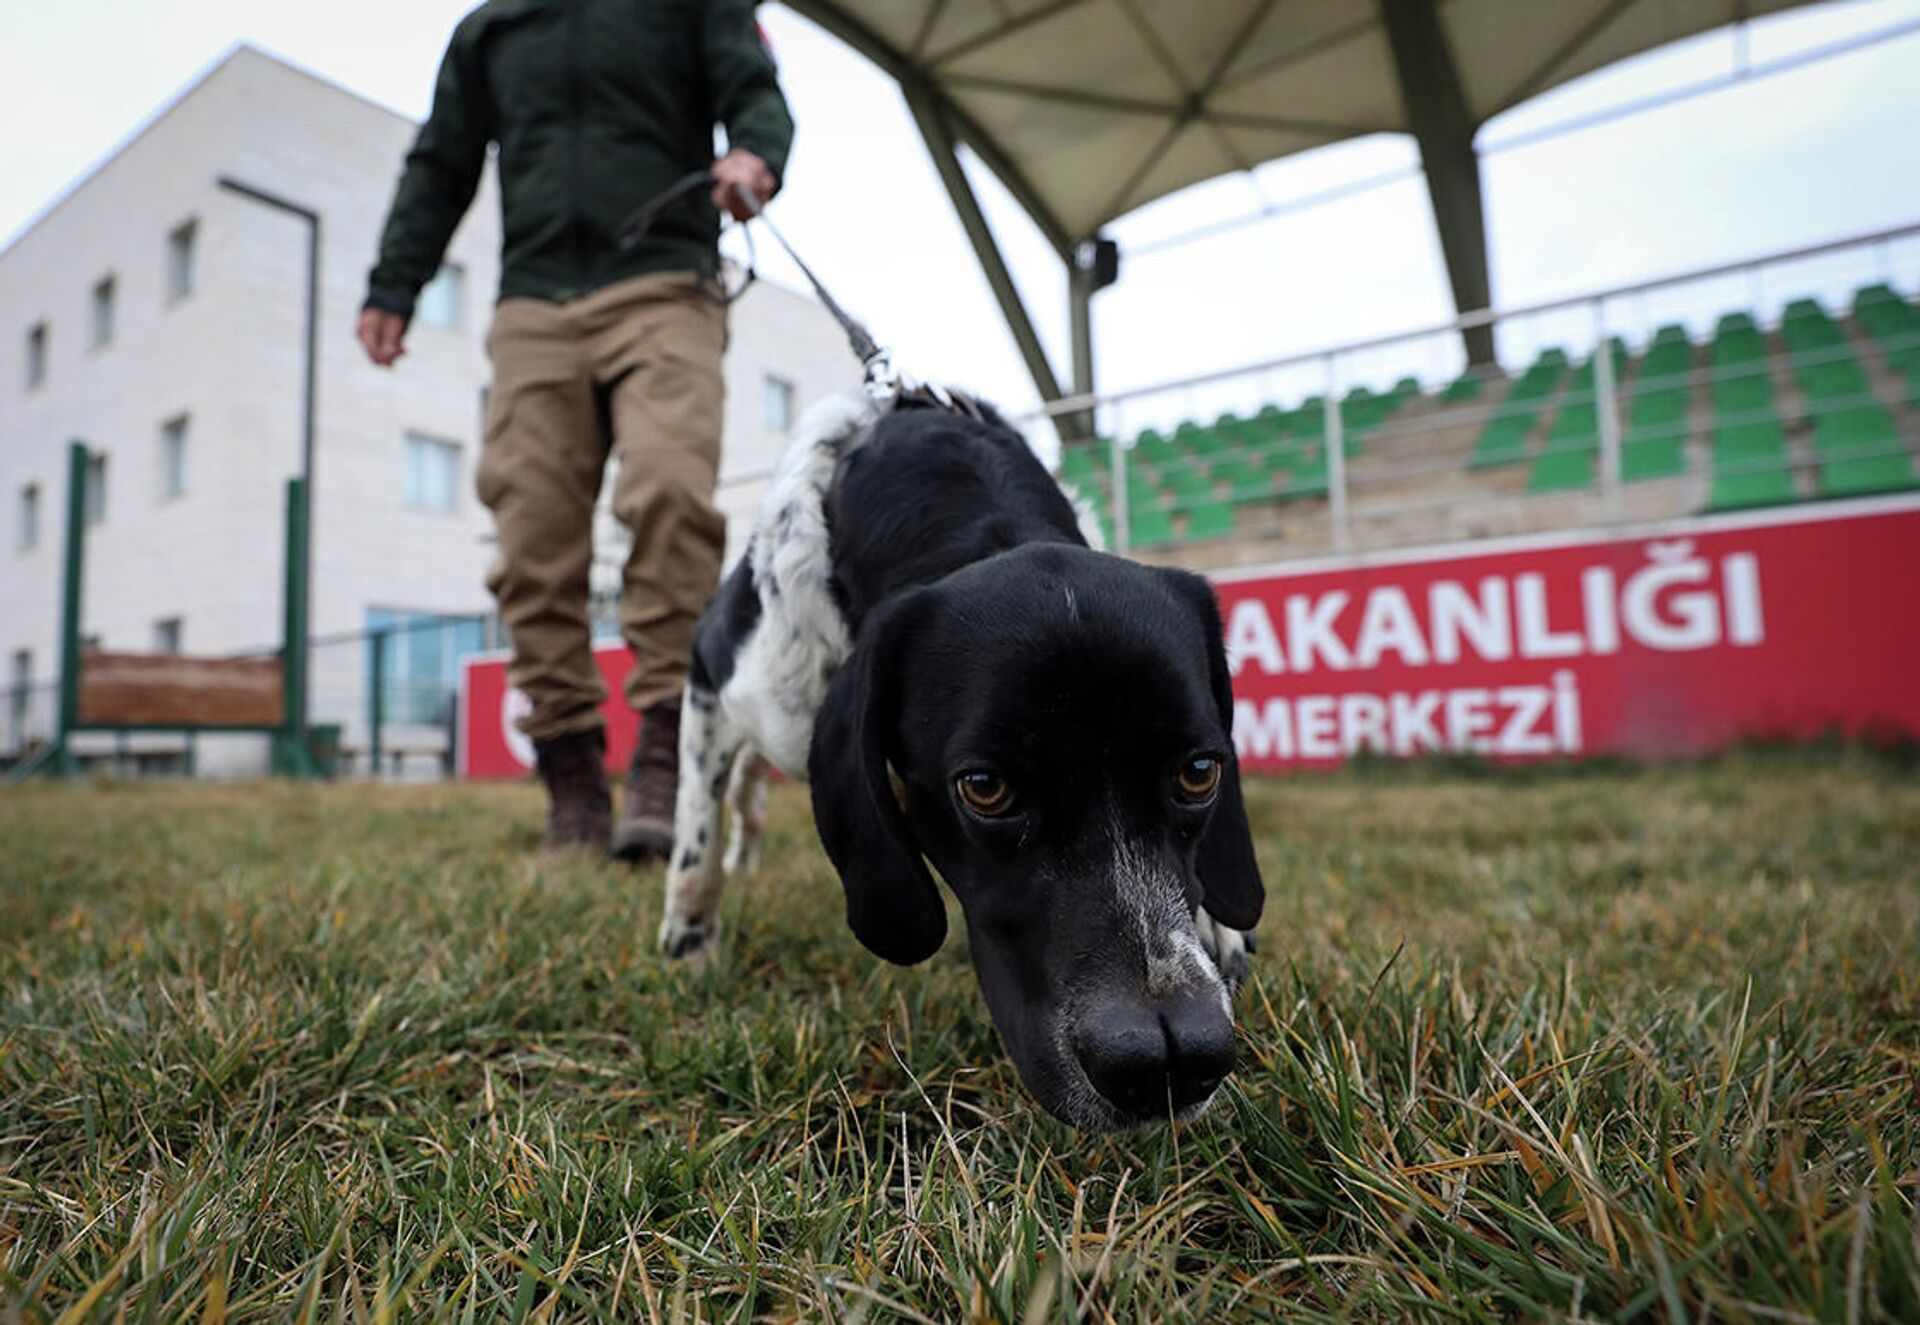 Yaklaşık 1.5 yıllık çalışma sonunda köpeklerin hazır olduğuna işaret eden Ataseven, görev standartlarını taşıyan bu köpeklerin şimdi uygun görülen görev yerlerine gönderileceğini söyledi.  - Sputnik Türkiye, 1920, 14.01.2022